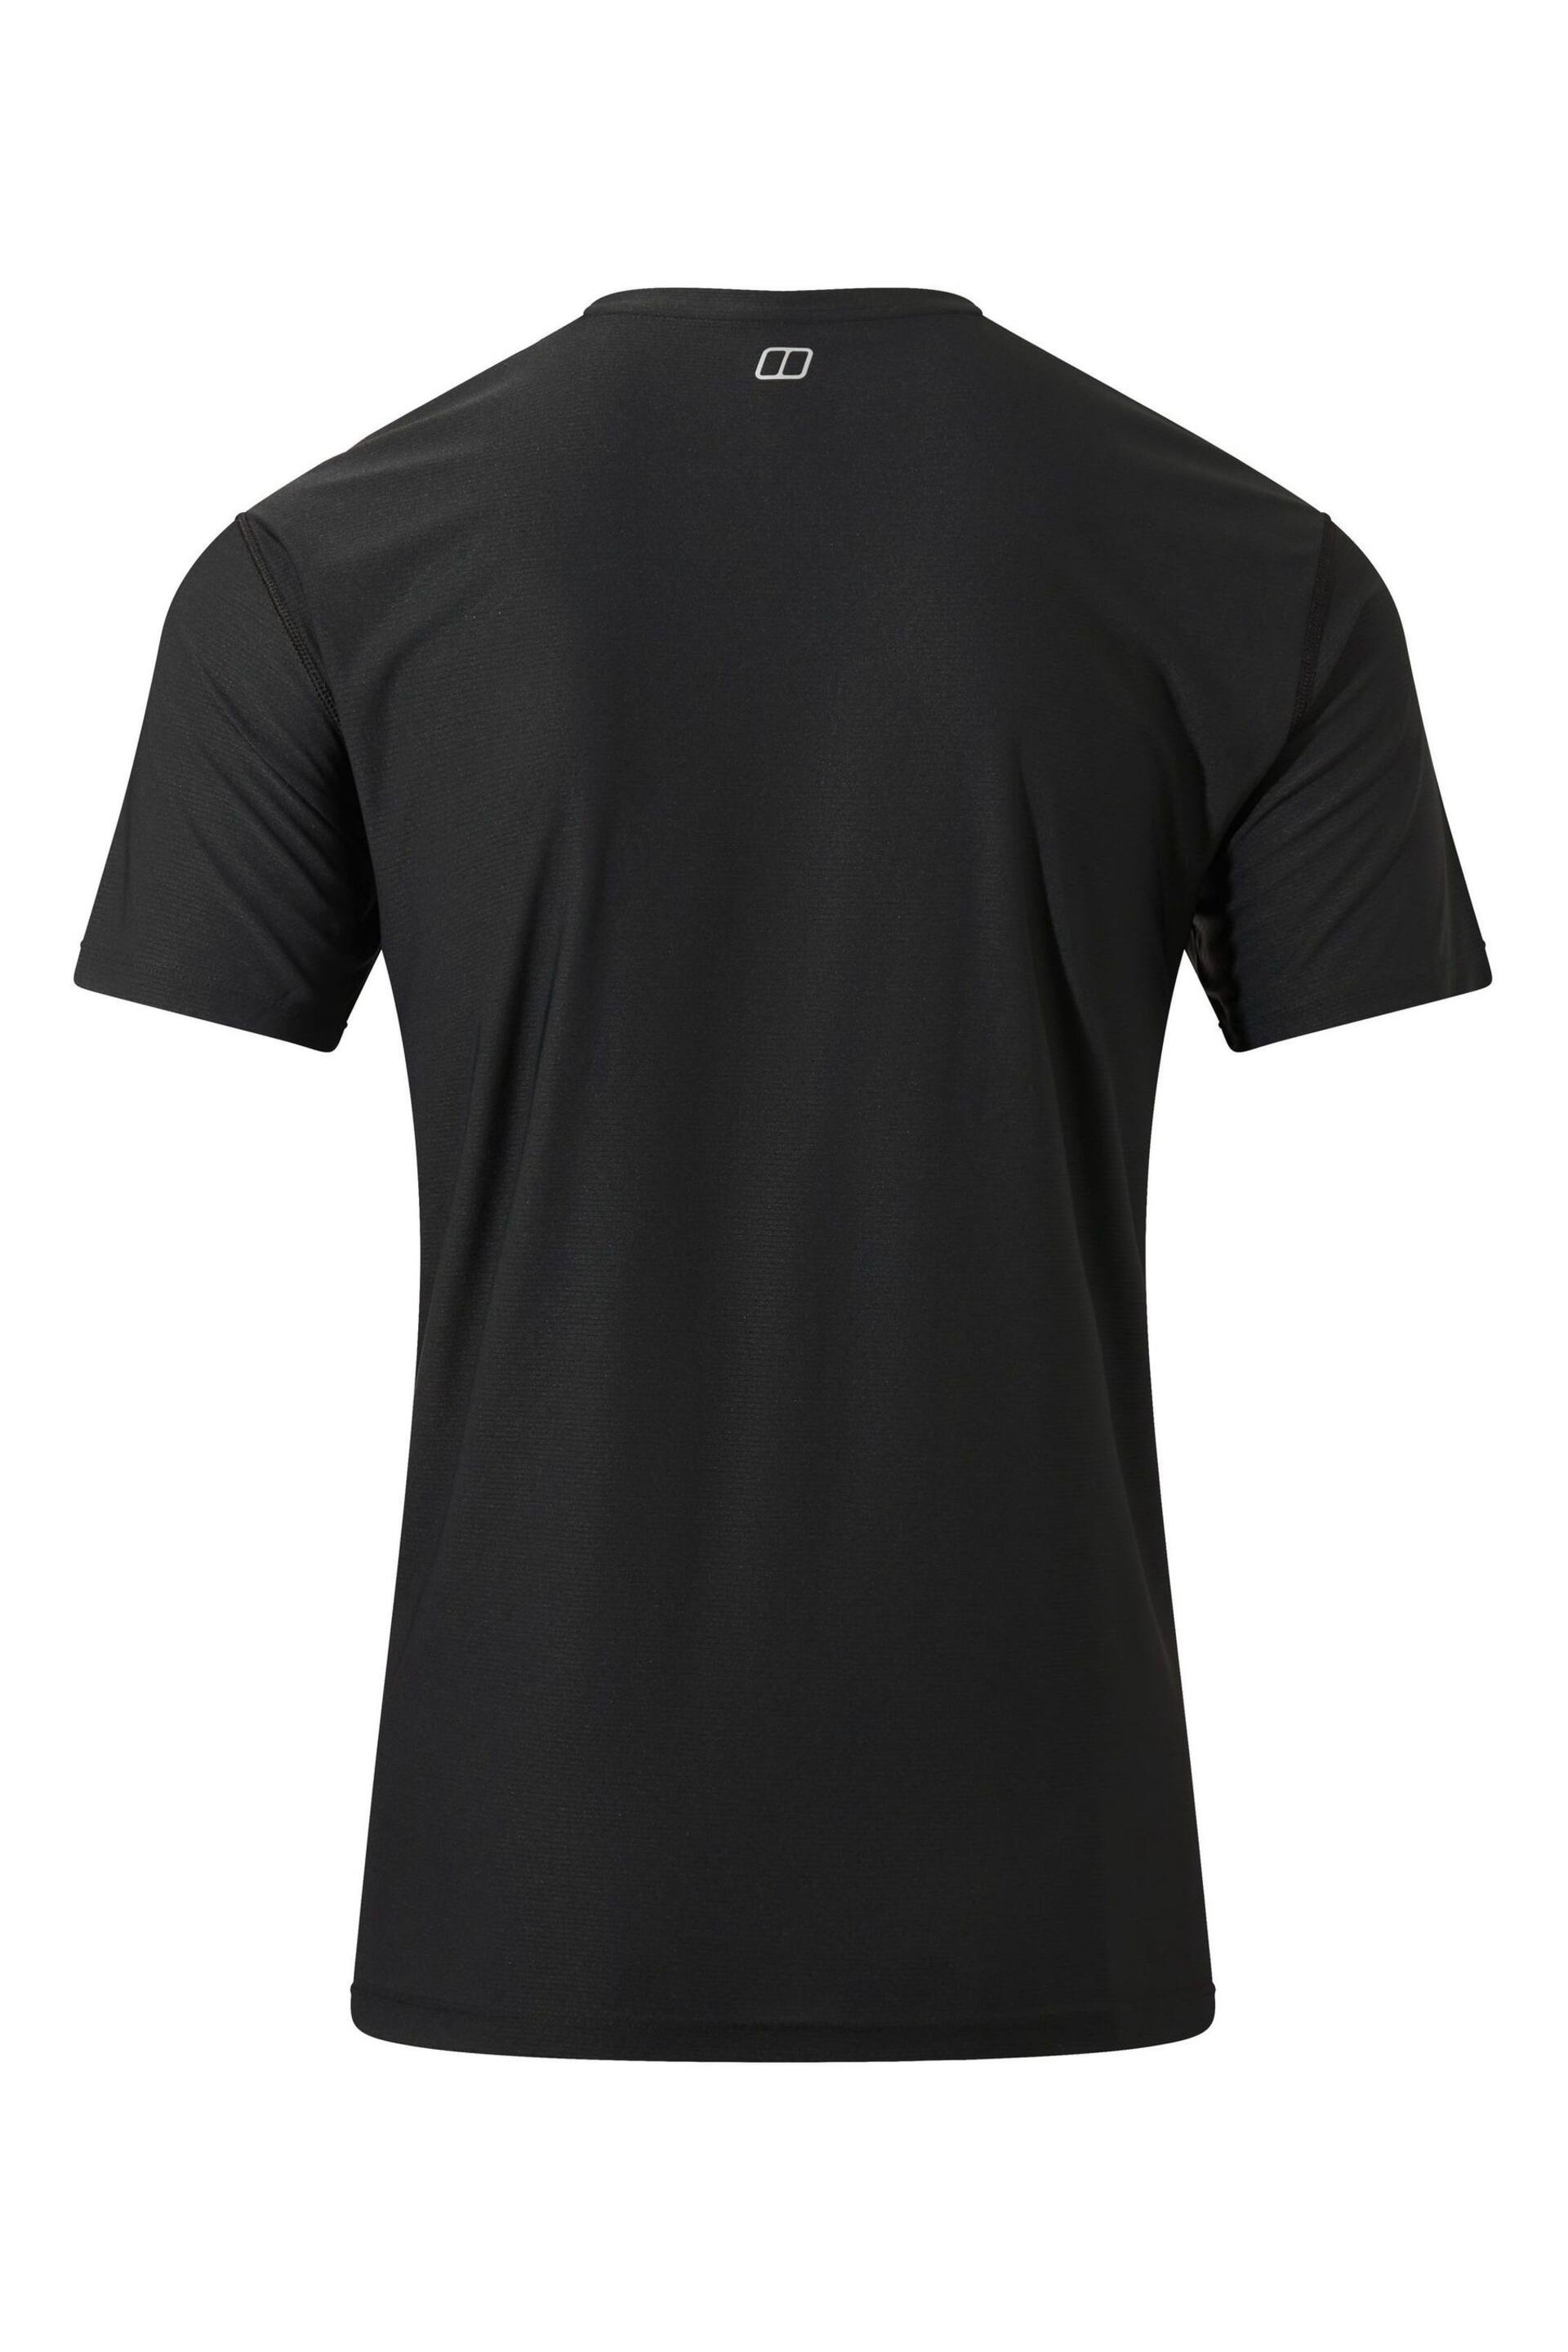 Berghaus 24/7 Short Sleeve Tech T-Shirt - Image 13 of 15